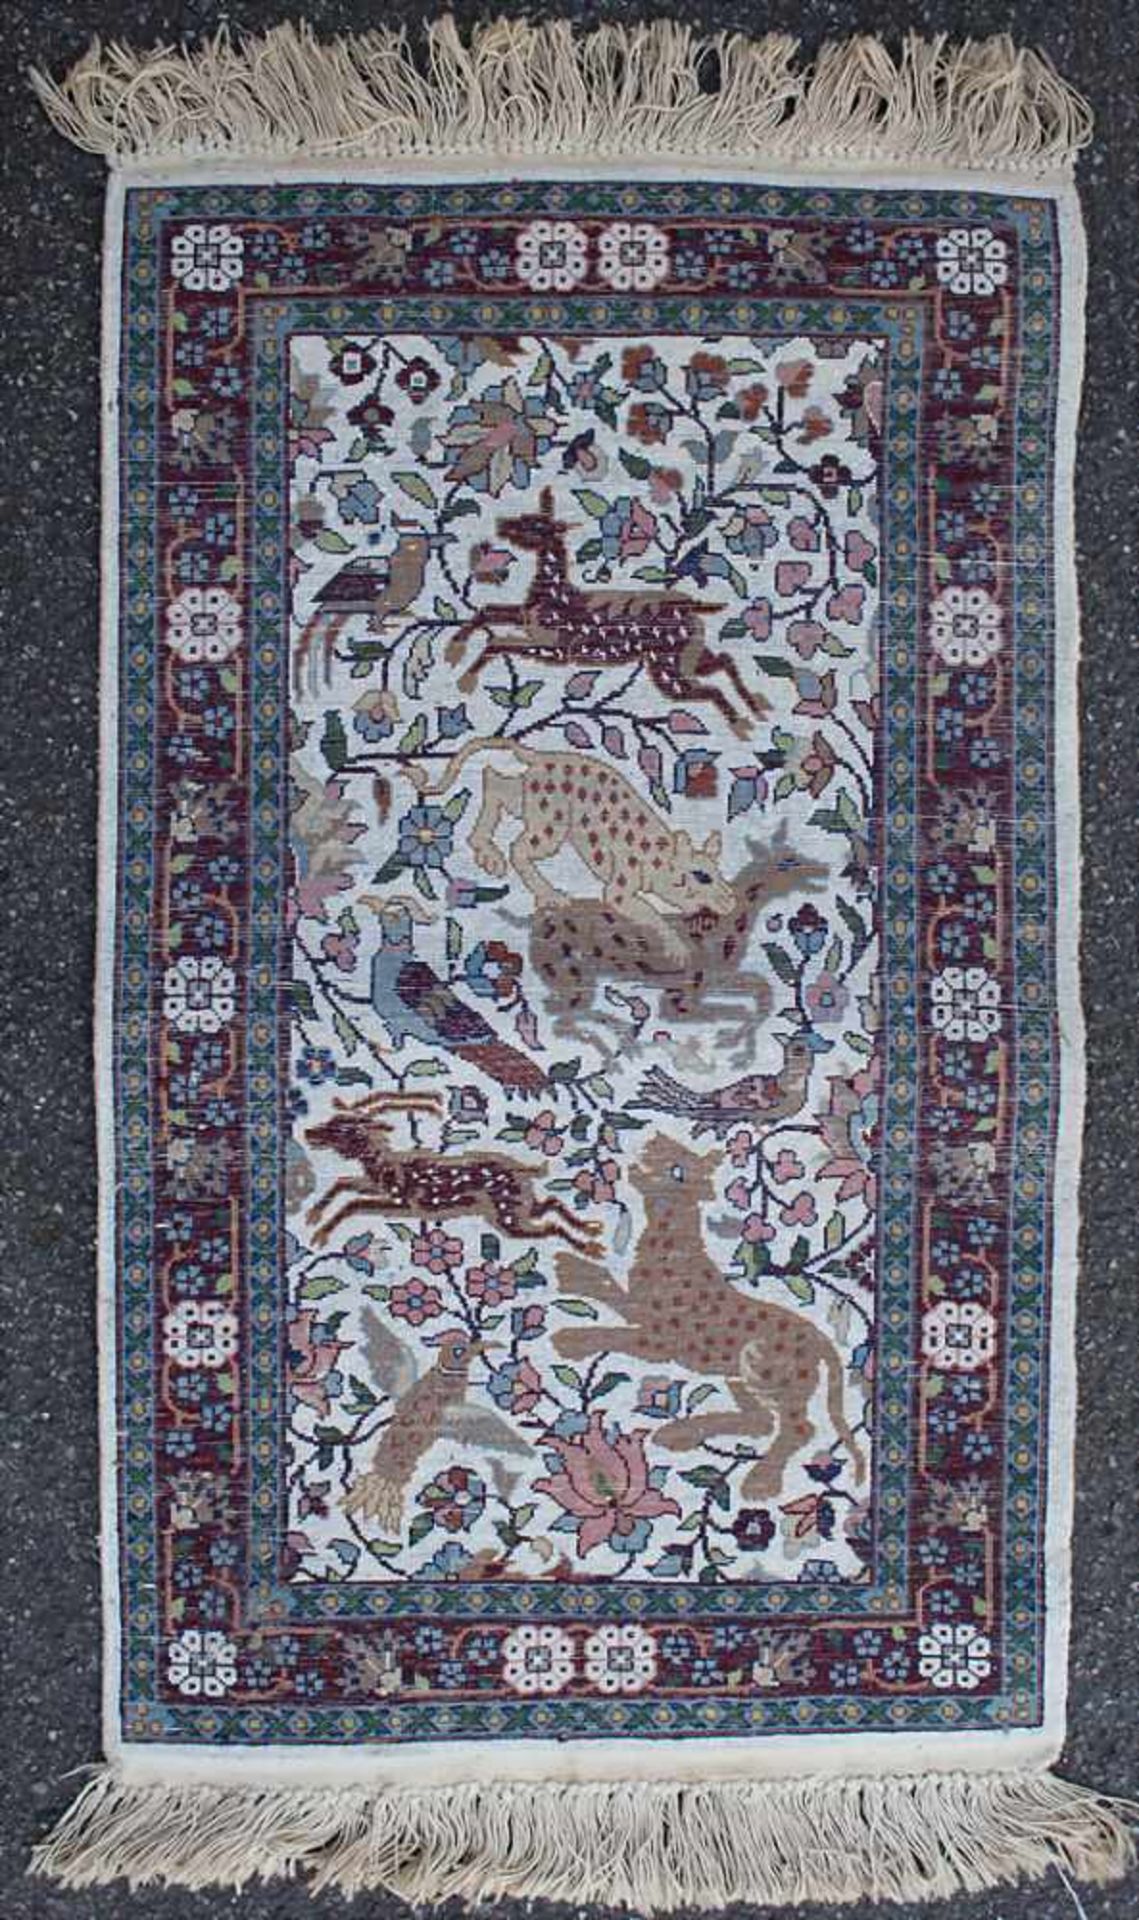 Teppich / Brücke / A carpet, 20. Jh.Material: Kaschmirseide,Dekor: zentrales Medaillon mit Tieren, - Bild 3 aus 4